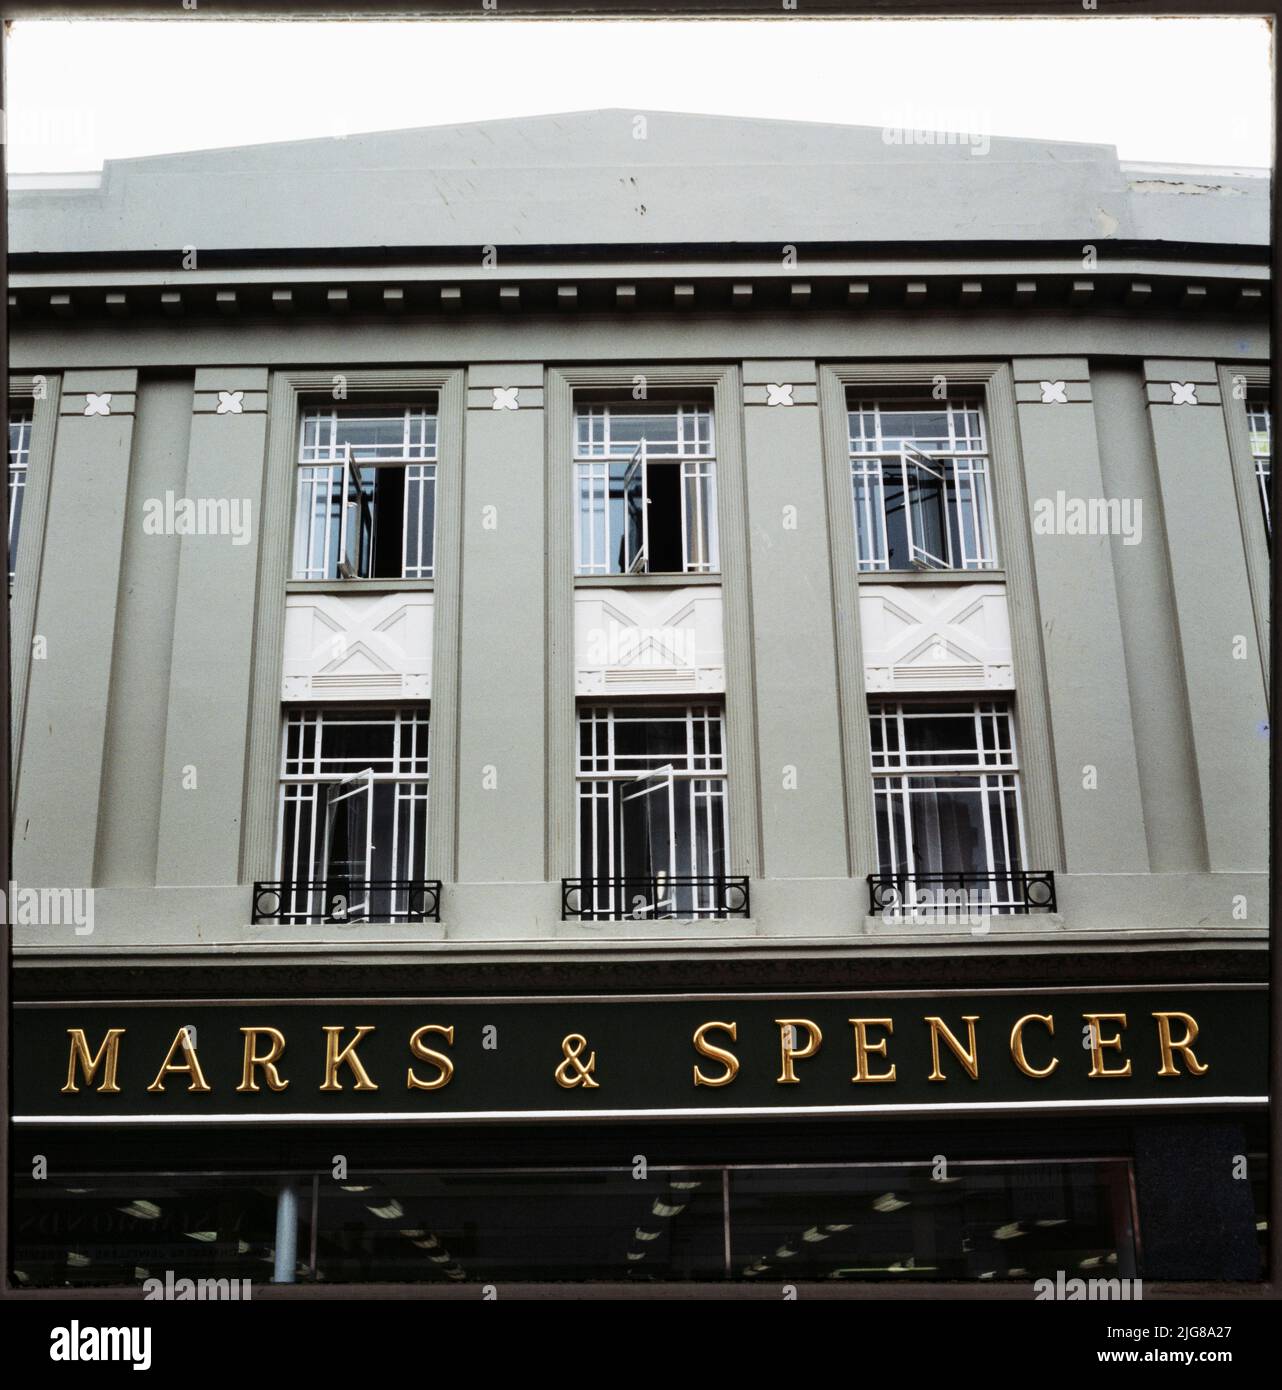 Marks and Spencer, 28-30, rue Biggin, Dover (Kent), 1970s-1990s. La baie centrale de l'élévation avant du magasin Marks and Spencer au 28-30 Biggin Street, montrant le panneau noir et or. Marks and Spencer a ouvert un magasin à Douvres au 43 Biggin Street vers 1911. Le magasin no 28-30, rue Biggin, a ouvert ses portes en 1930. Elle a fermé ses portes en 2019 et les locaux ont été occupés par un magasin de rabais B&amp;M. Banque D'Images